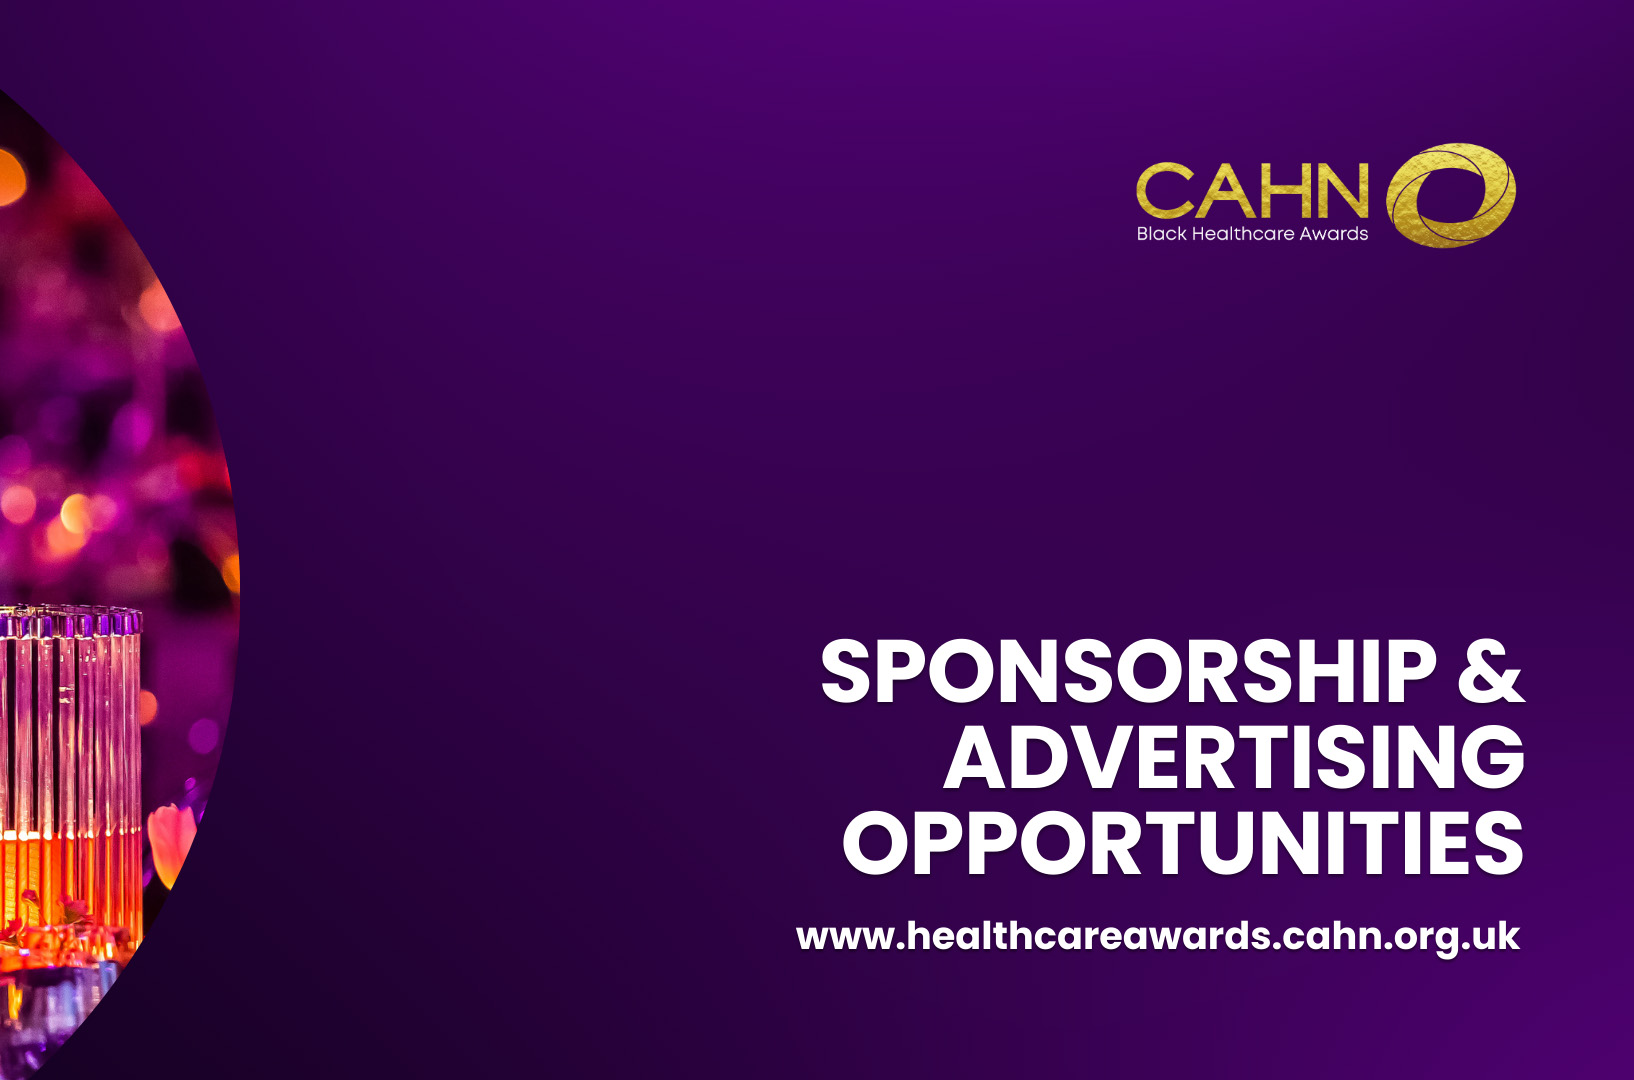 sponsorship-cahn-black-healthcare-awards-